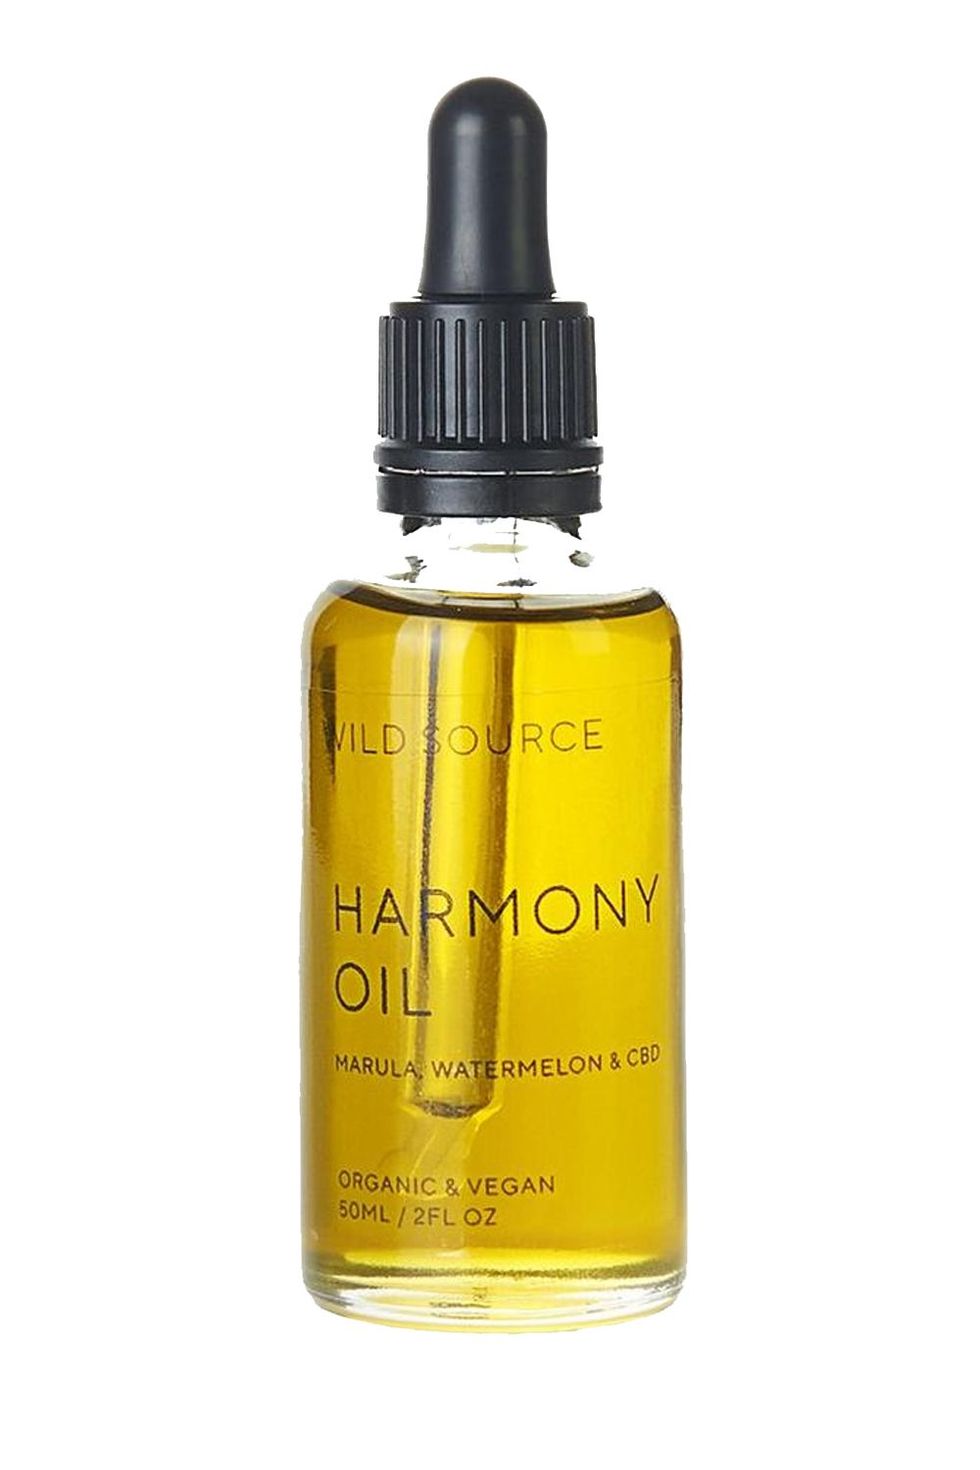 Wild Source Harmony Oil